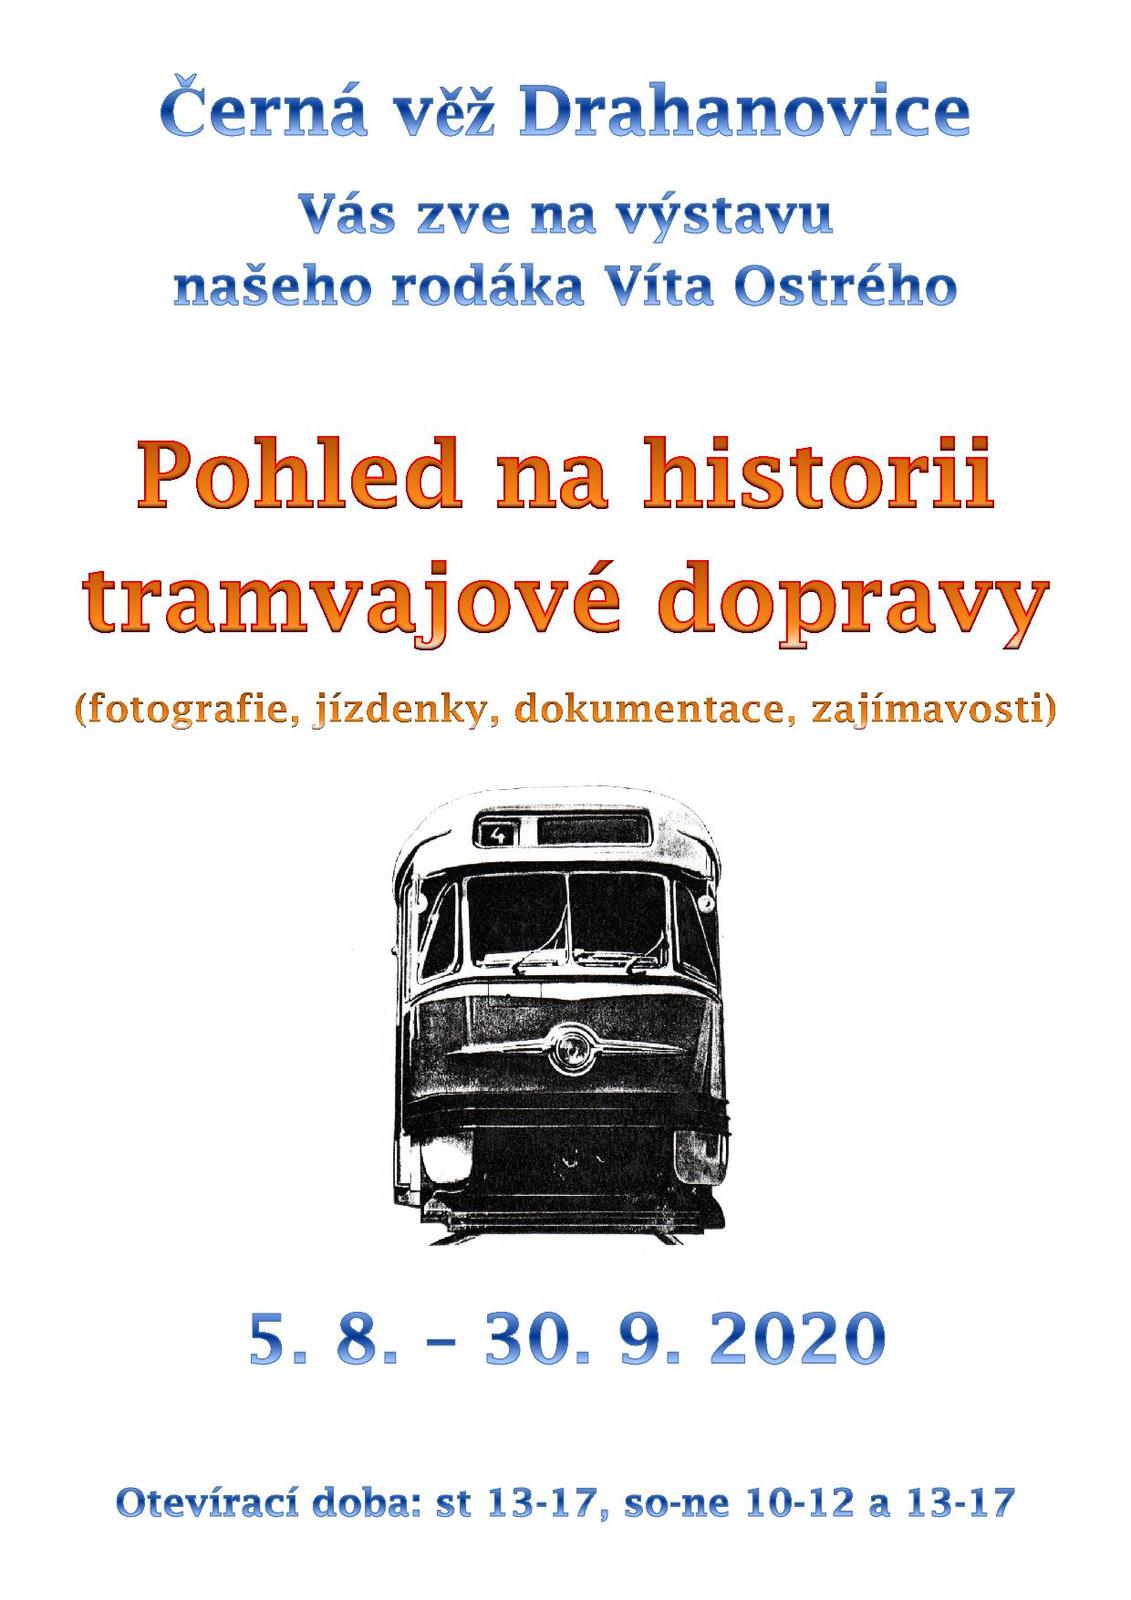 Plakát výstava tramvají Viťa Ostrý 2020.jpg